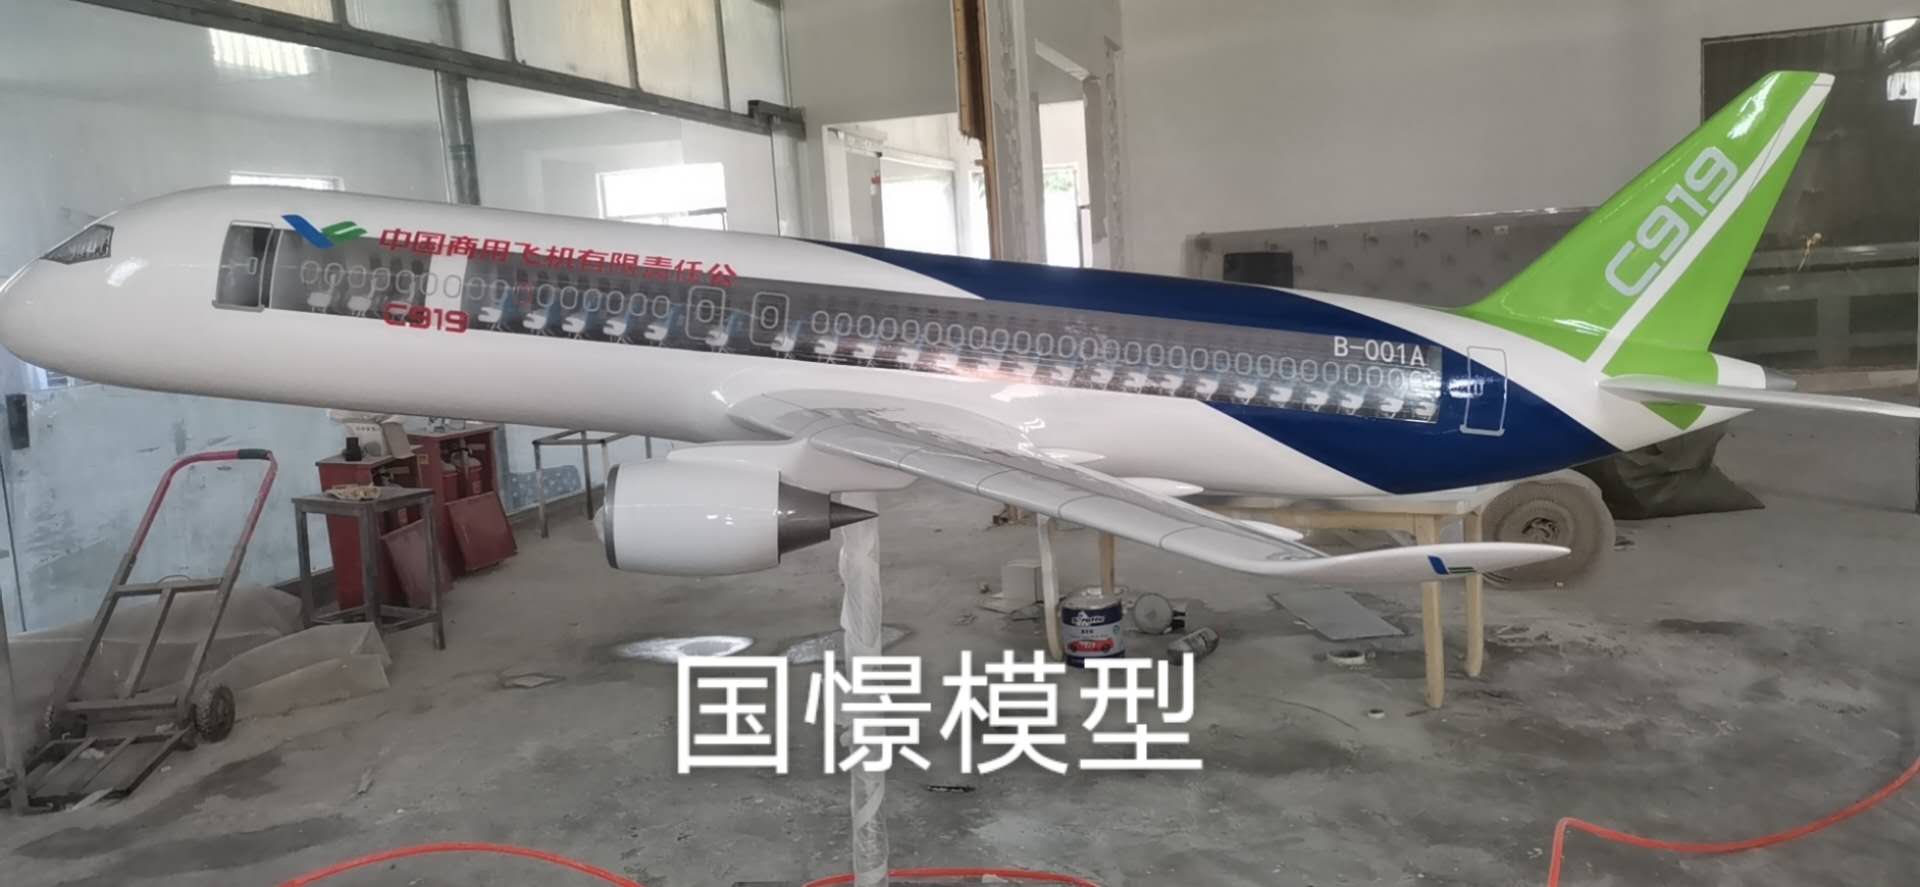 清涧县飞机模型